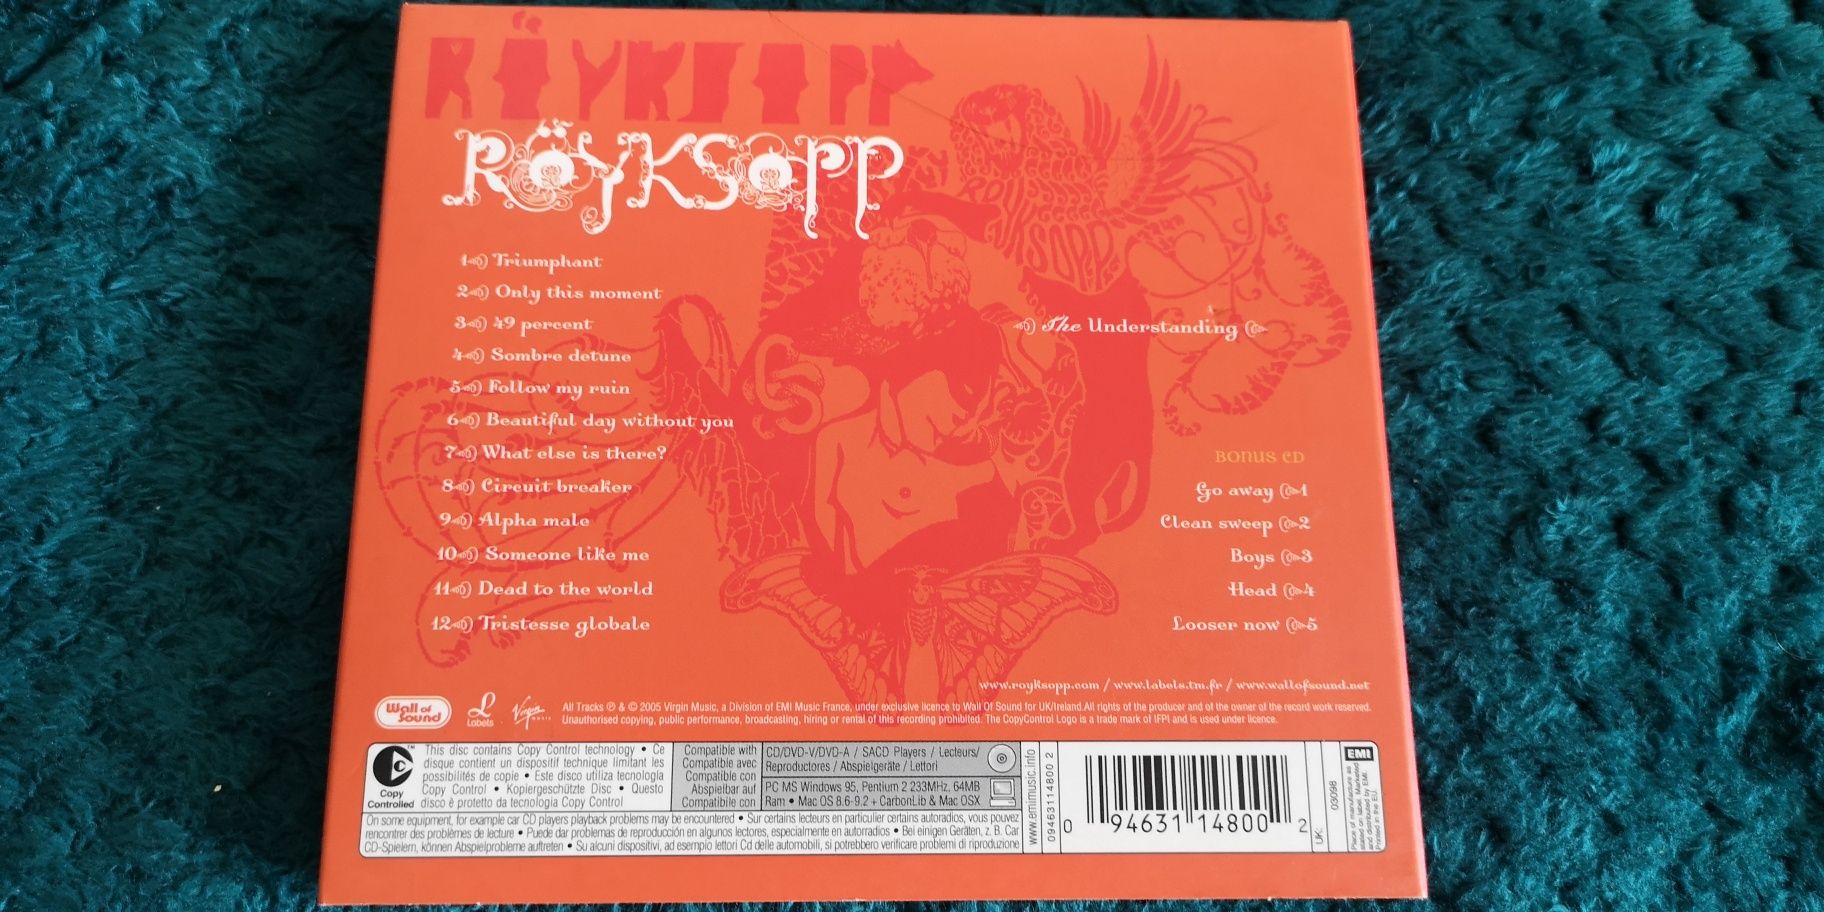 Royksopp - The Understanding. 2cd. Deluxe Edition